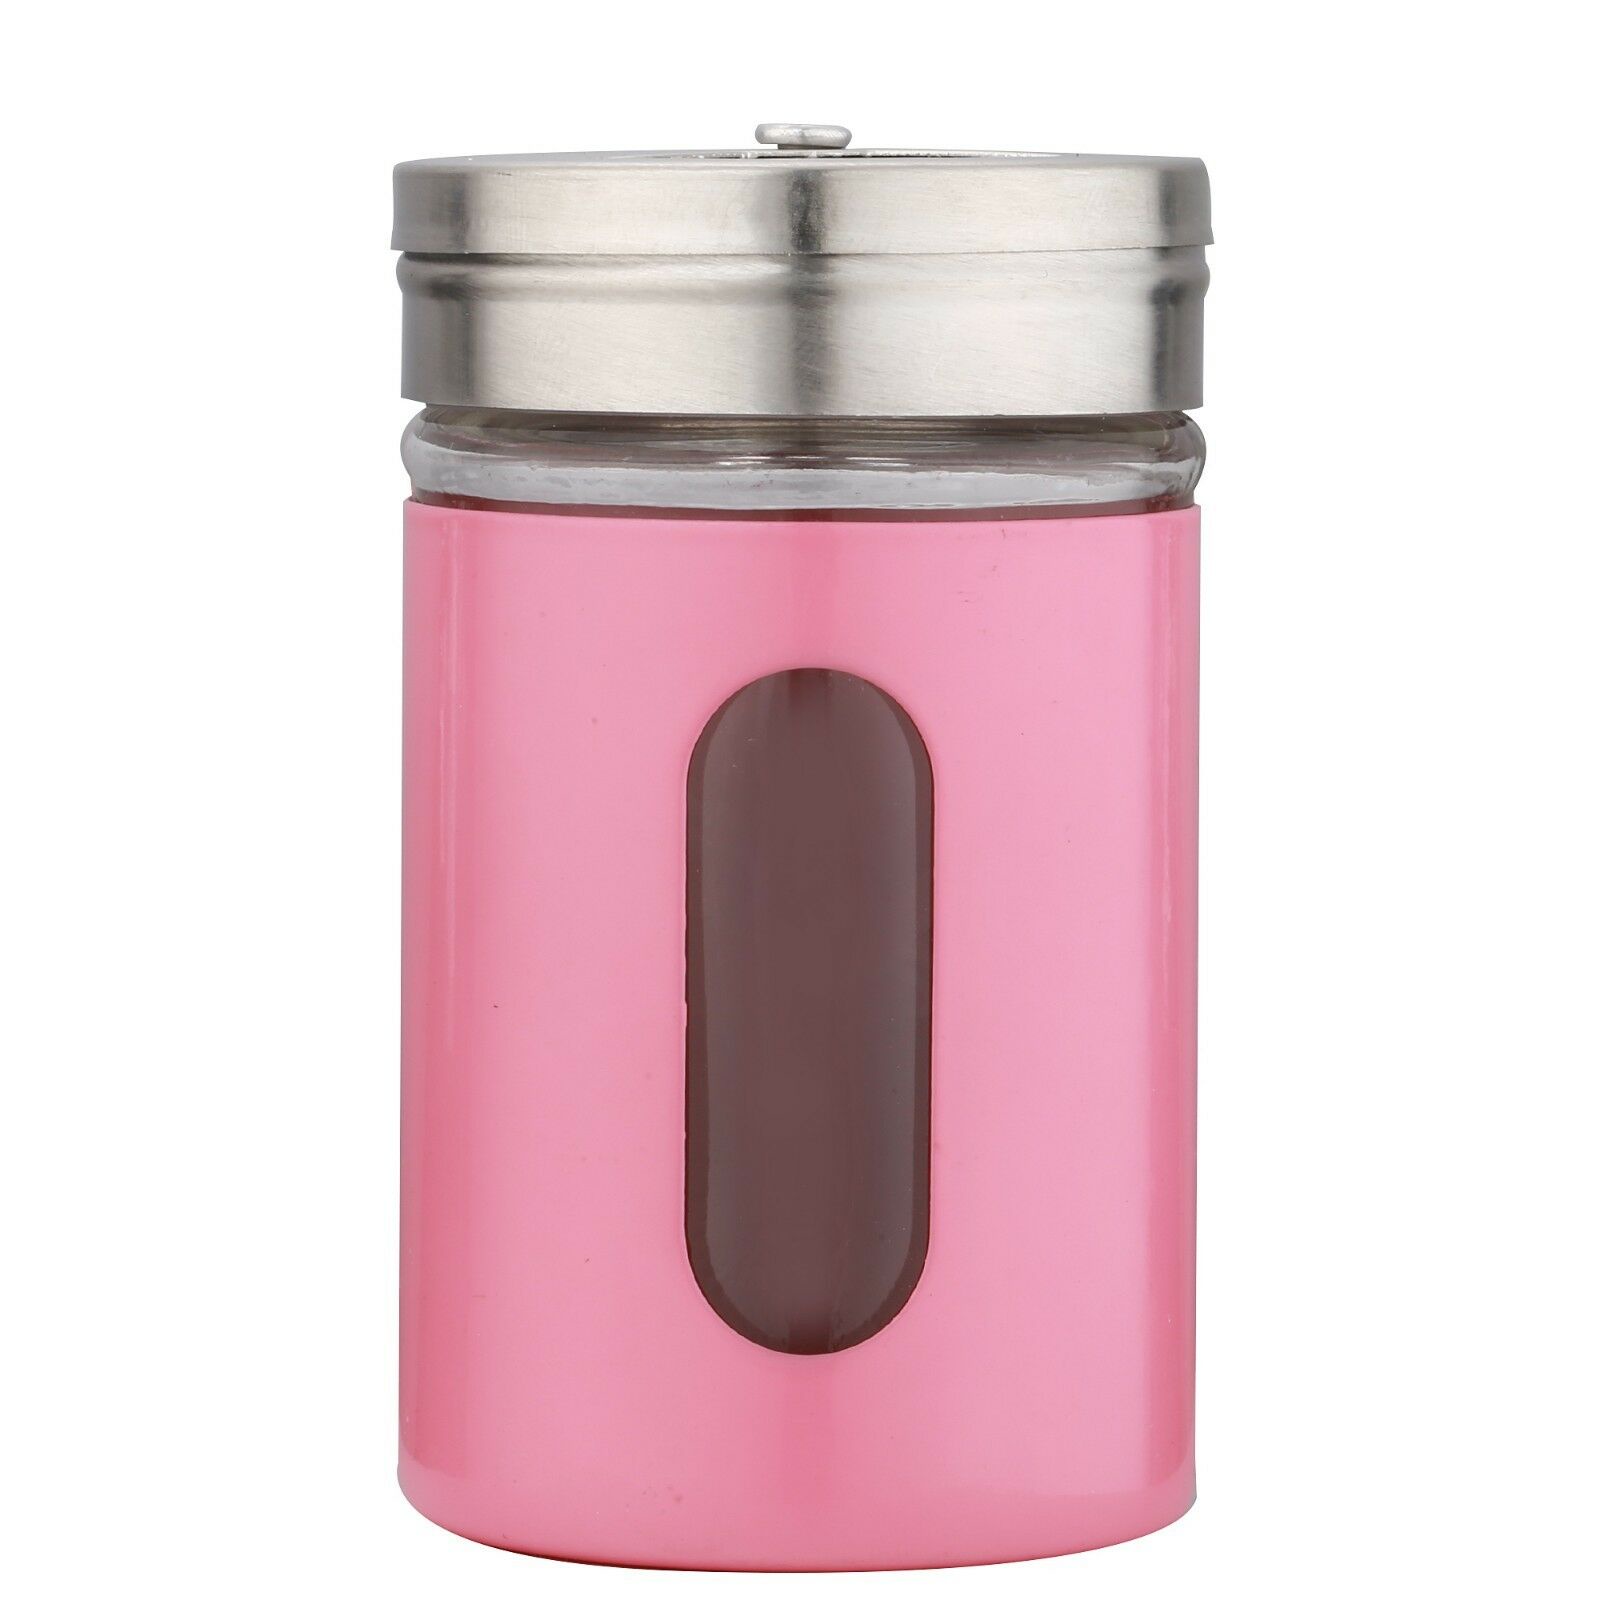 фото Банка для соли Migliores Стеклянная емкость «одета» в металлический чехол., розовый